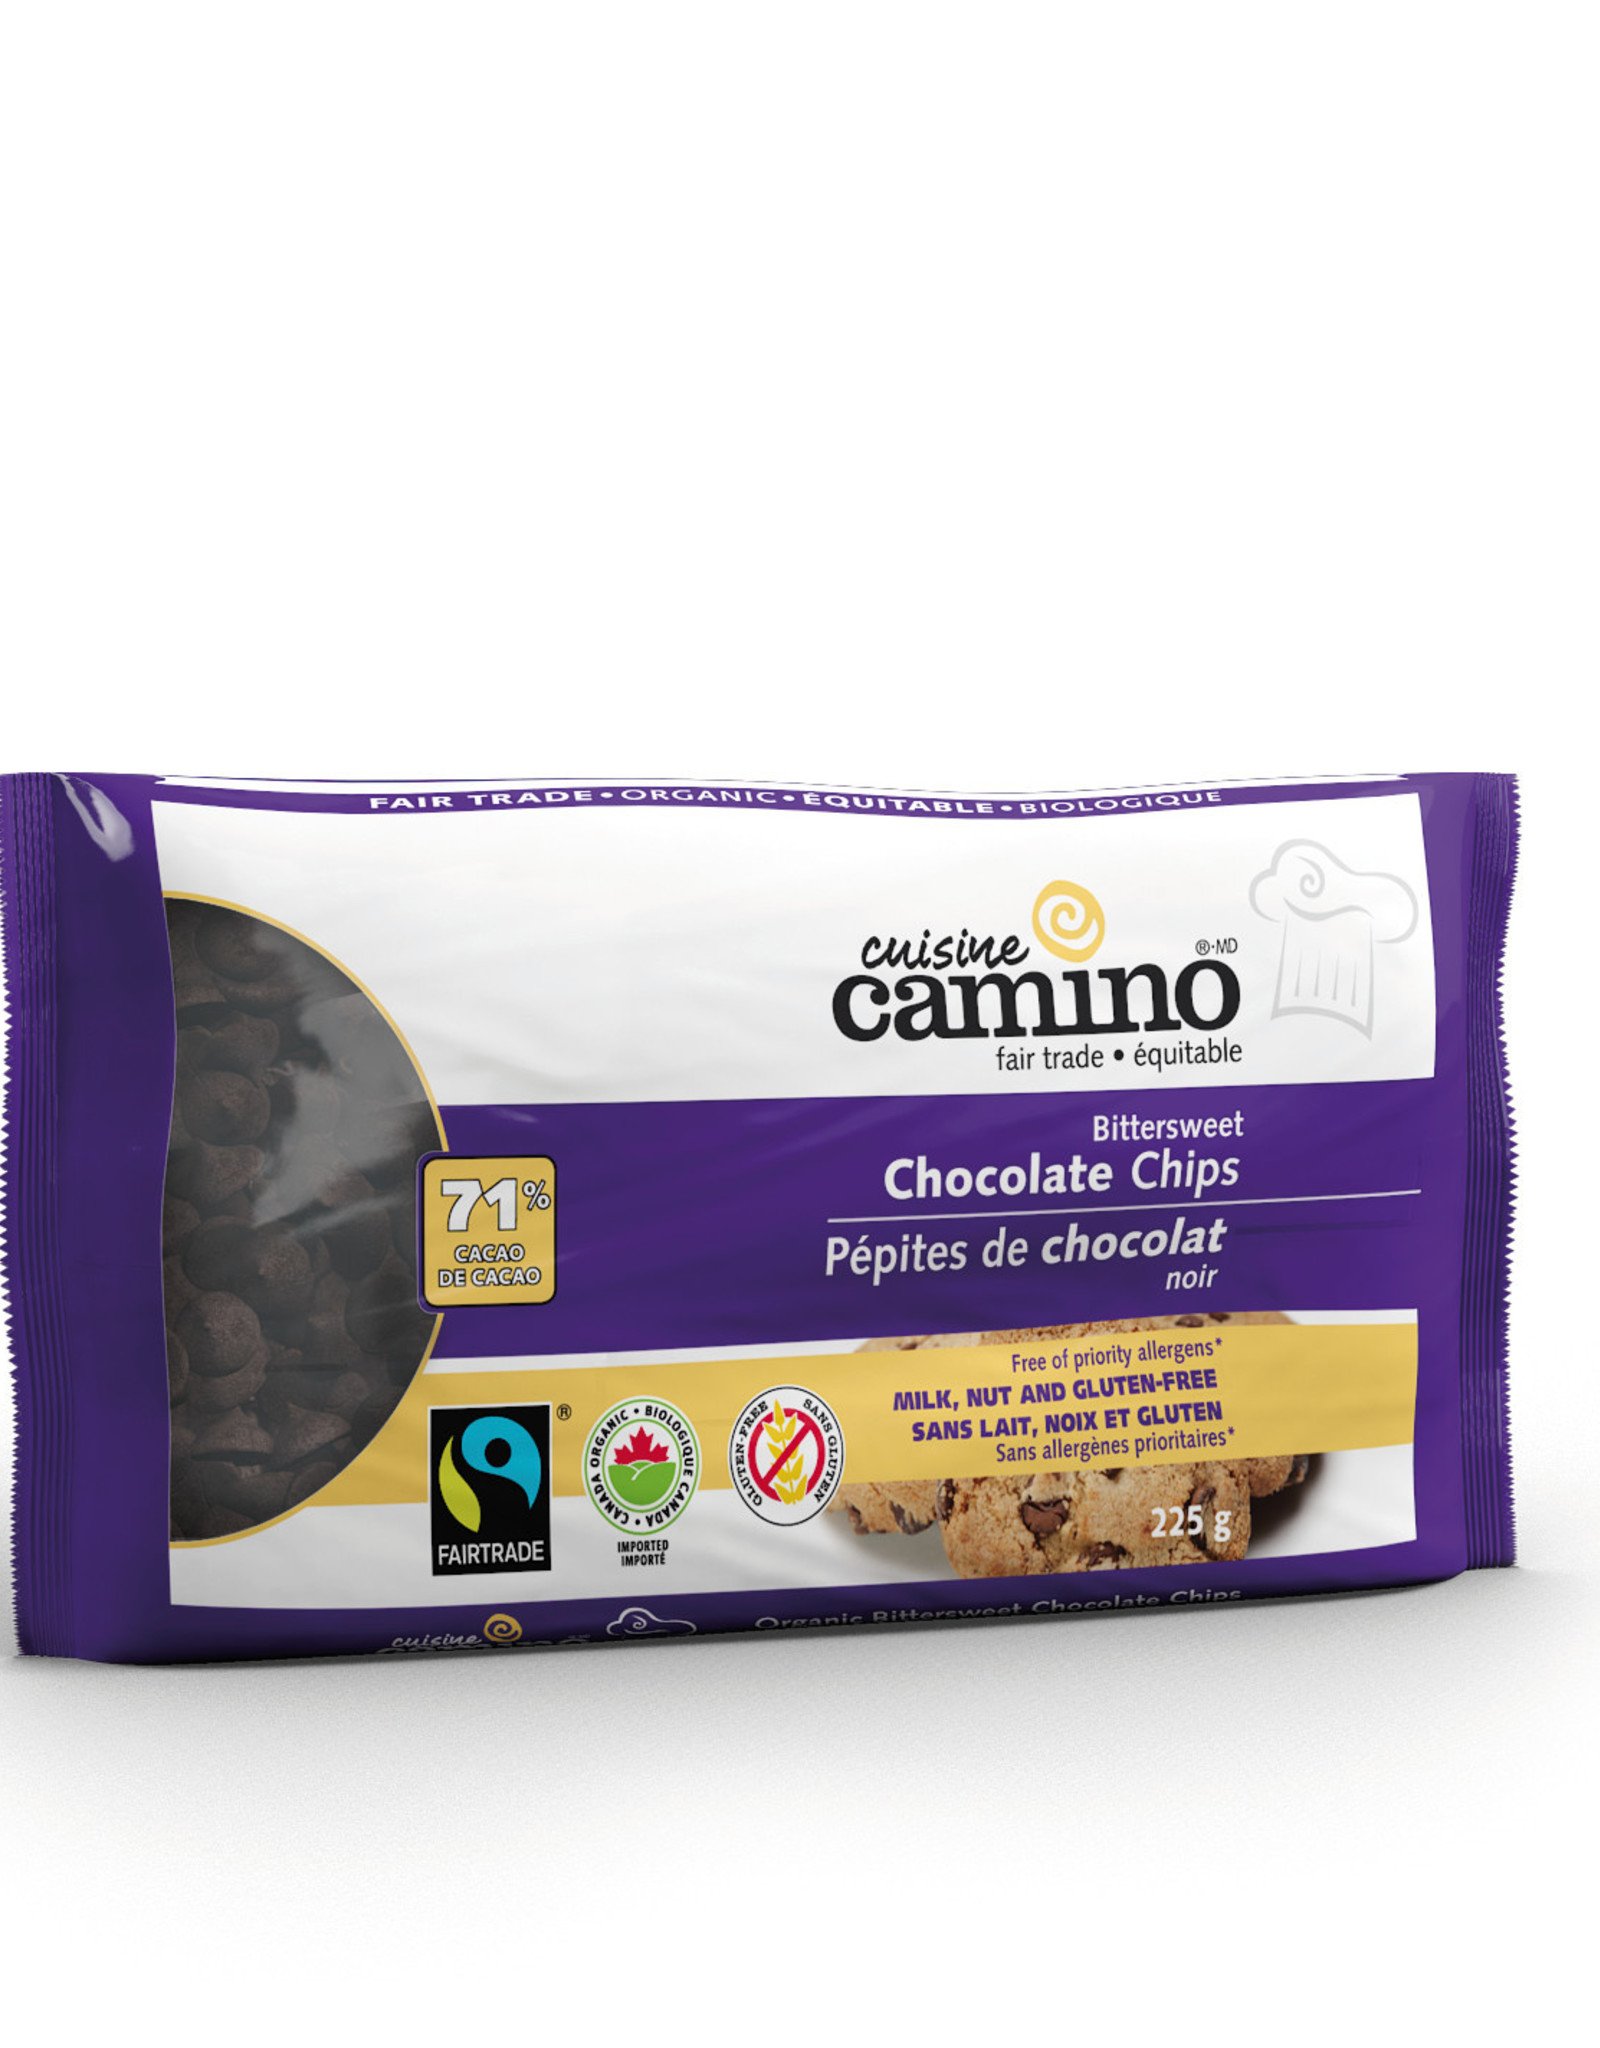 Camino Camino Bittersweet Chocolate Chips 225g - Peru/Canada